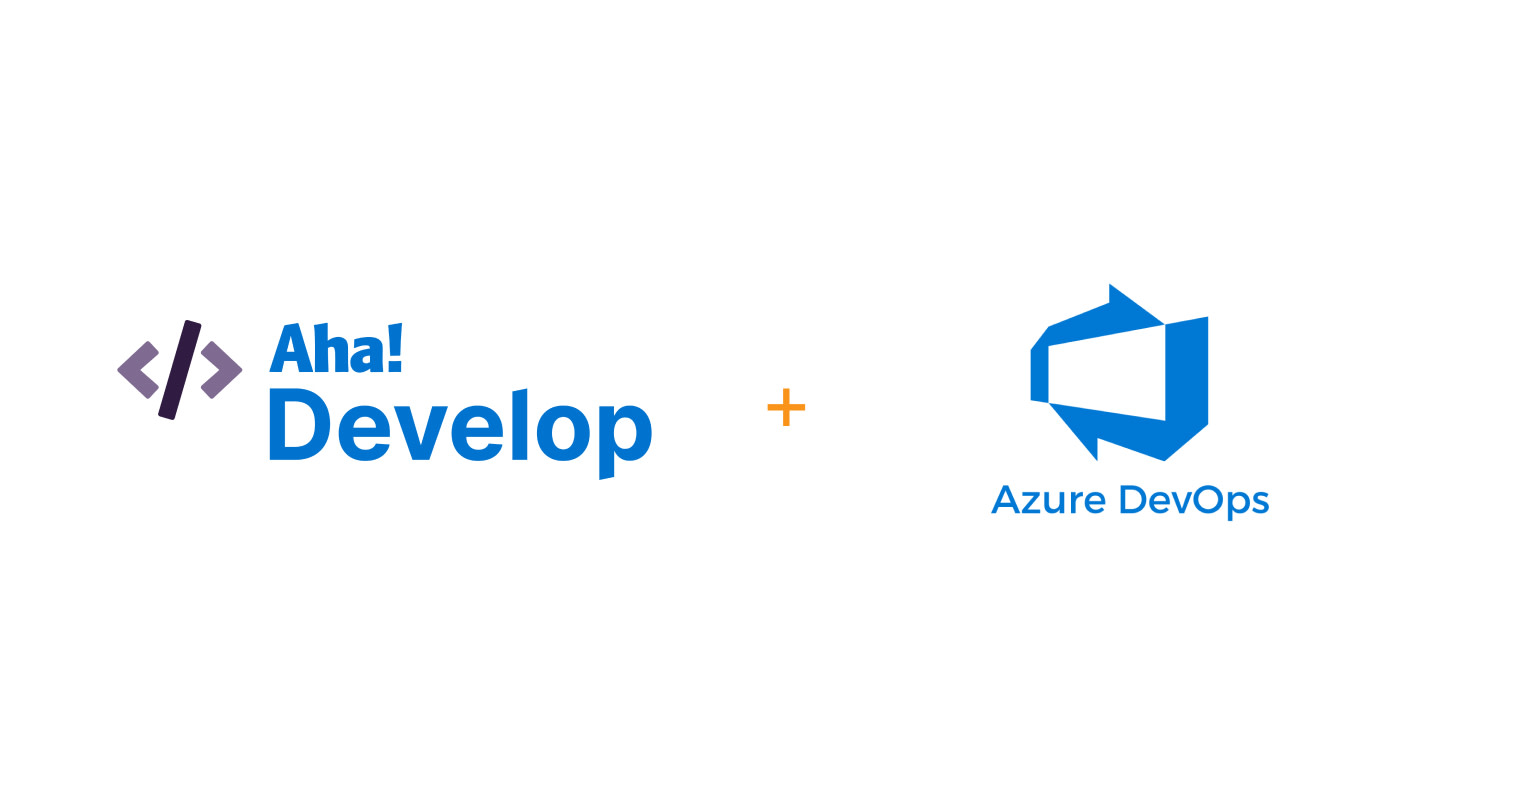 New aha! Develop extension for Azure DevOps